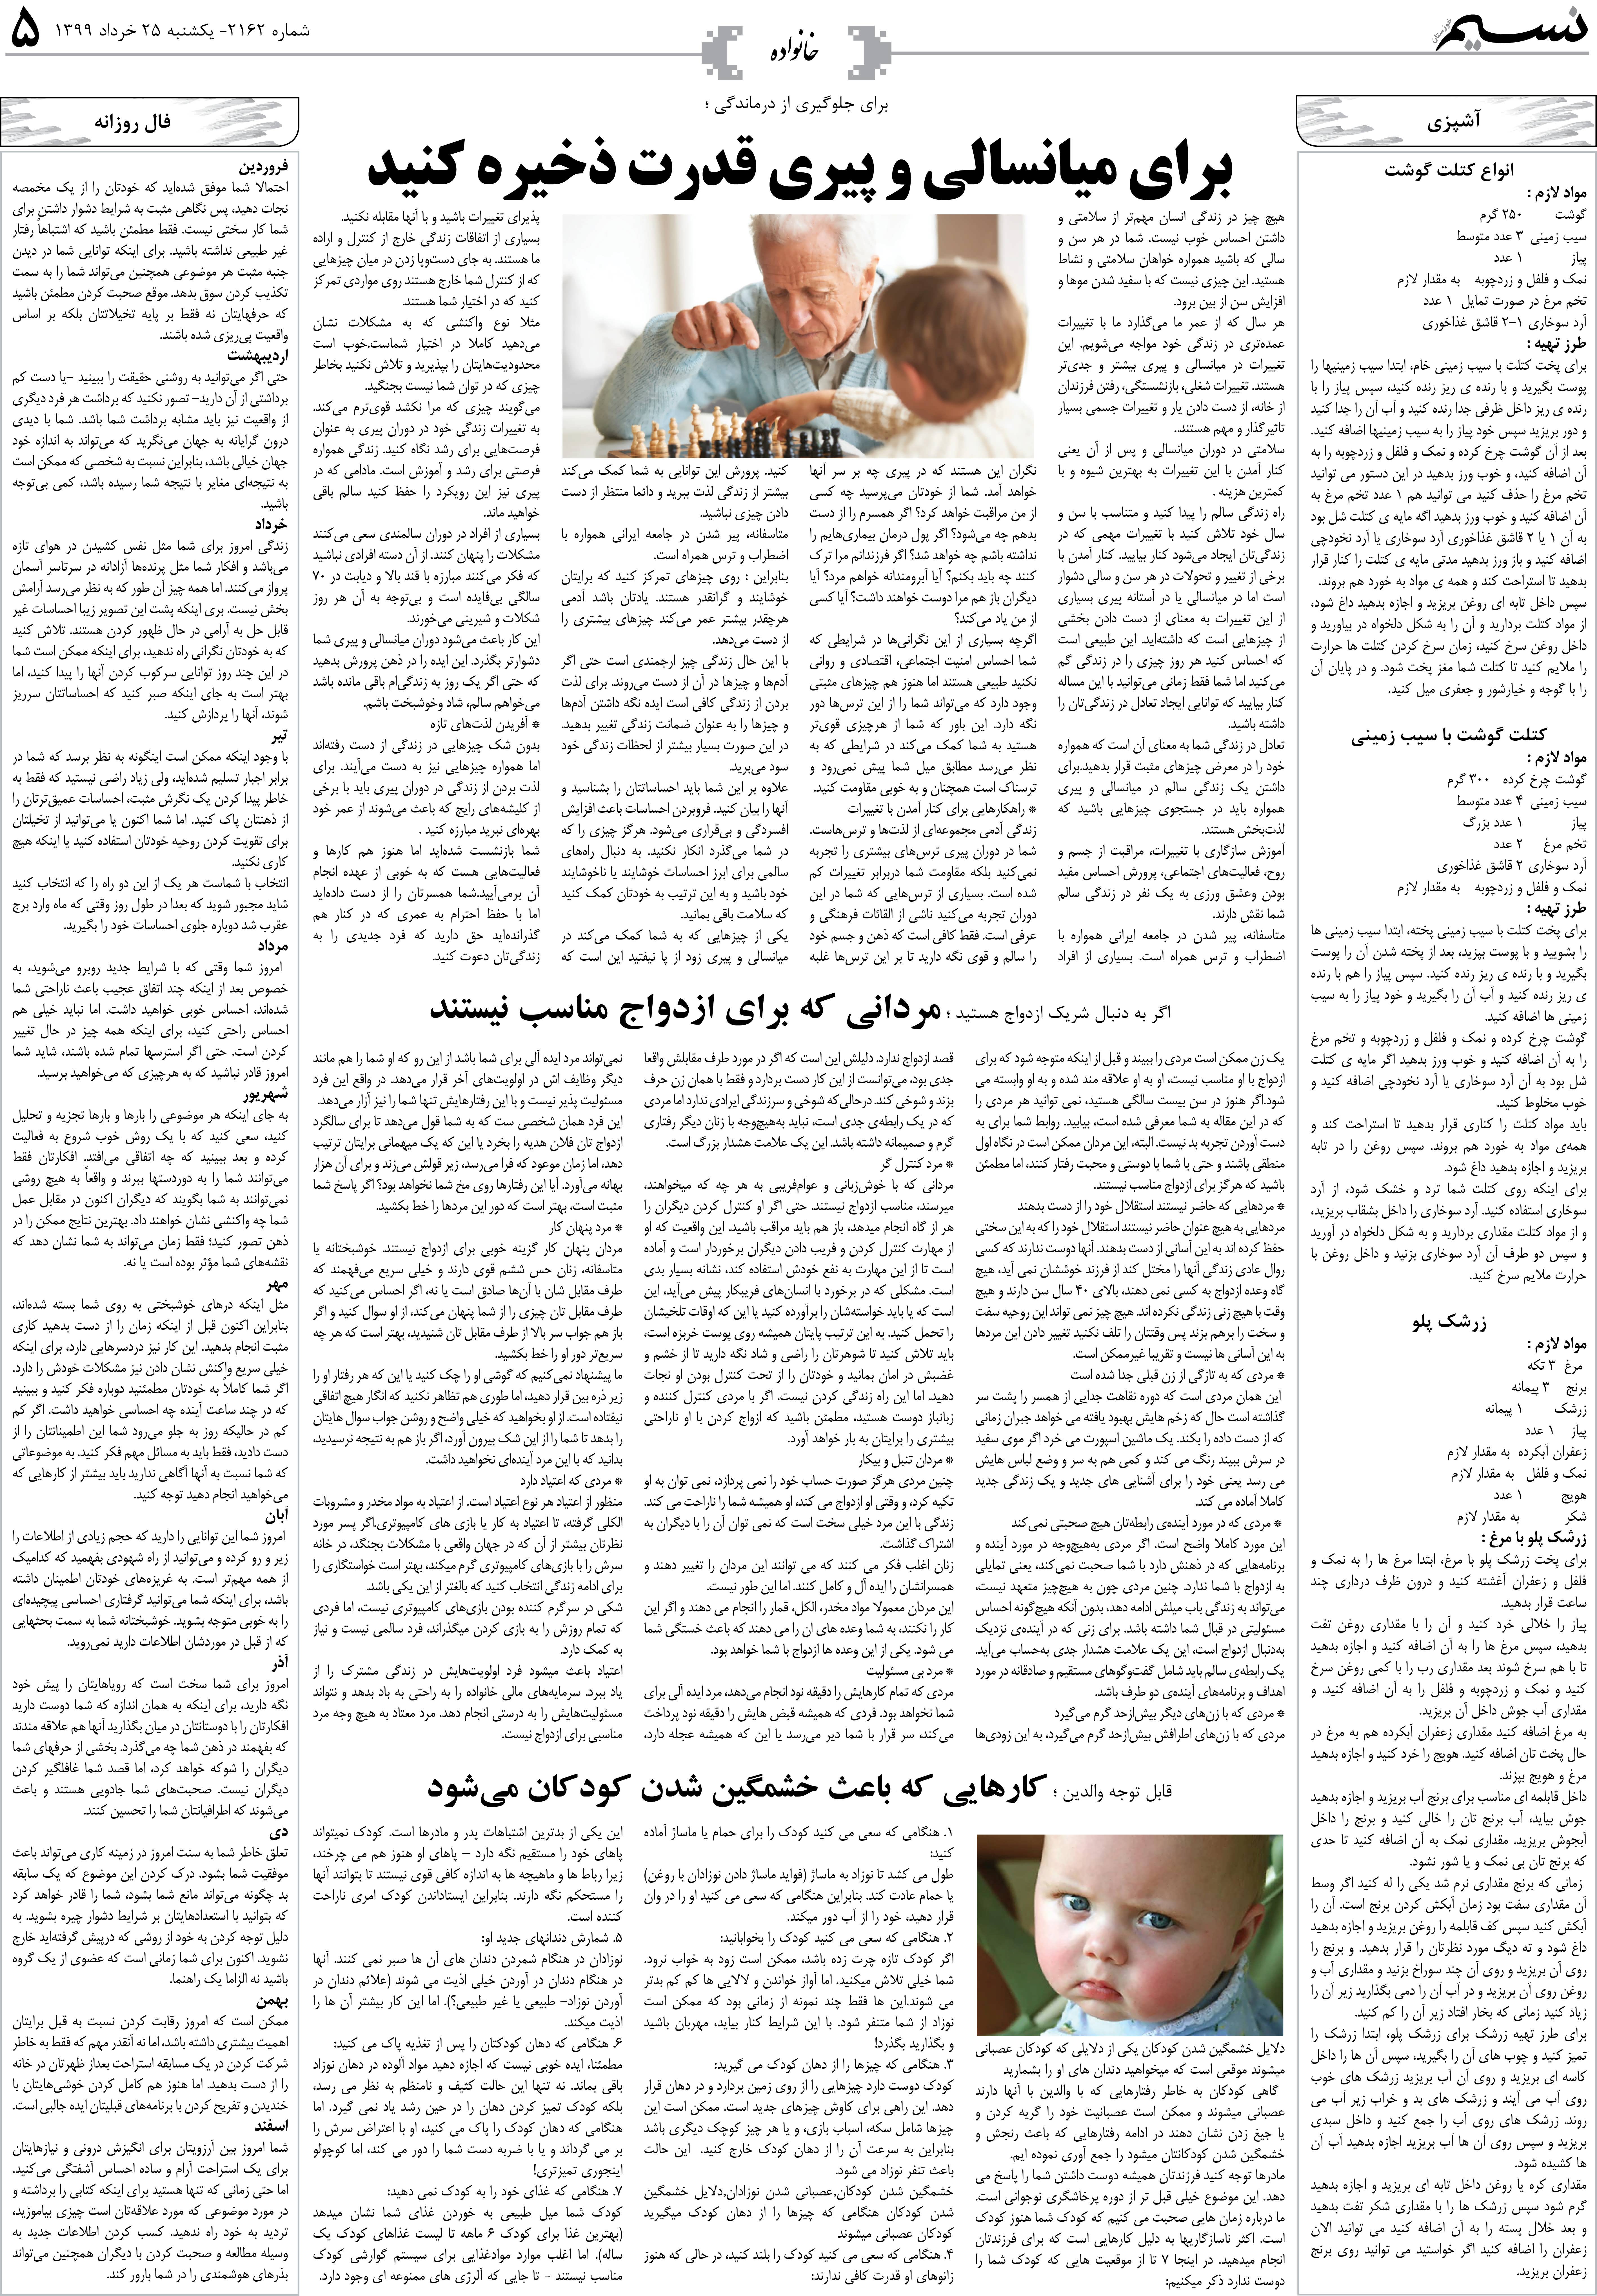 صفحه خانواده روزنامه نسیم شماره 2162